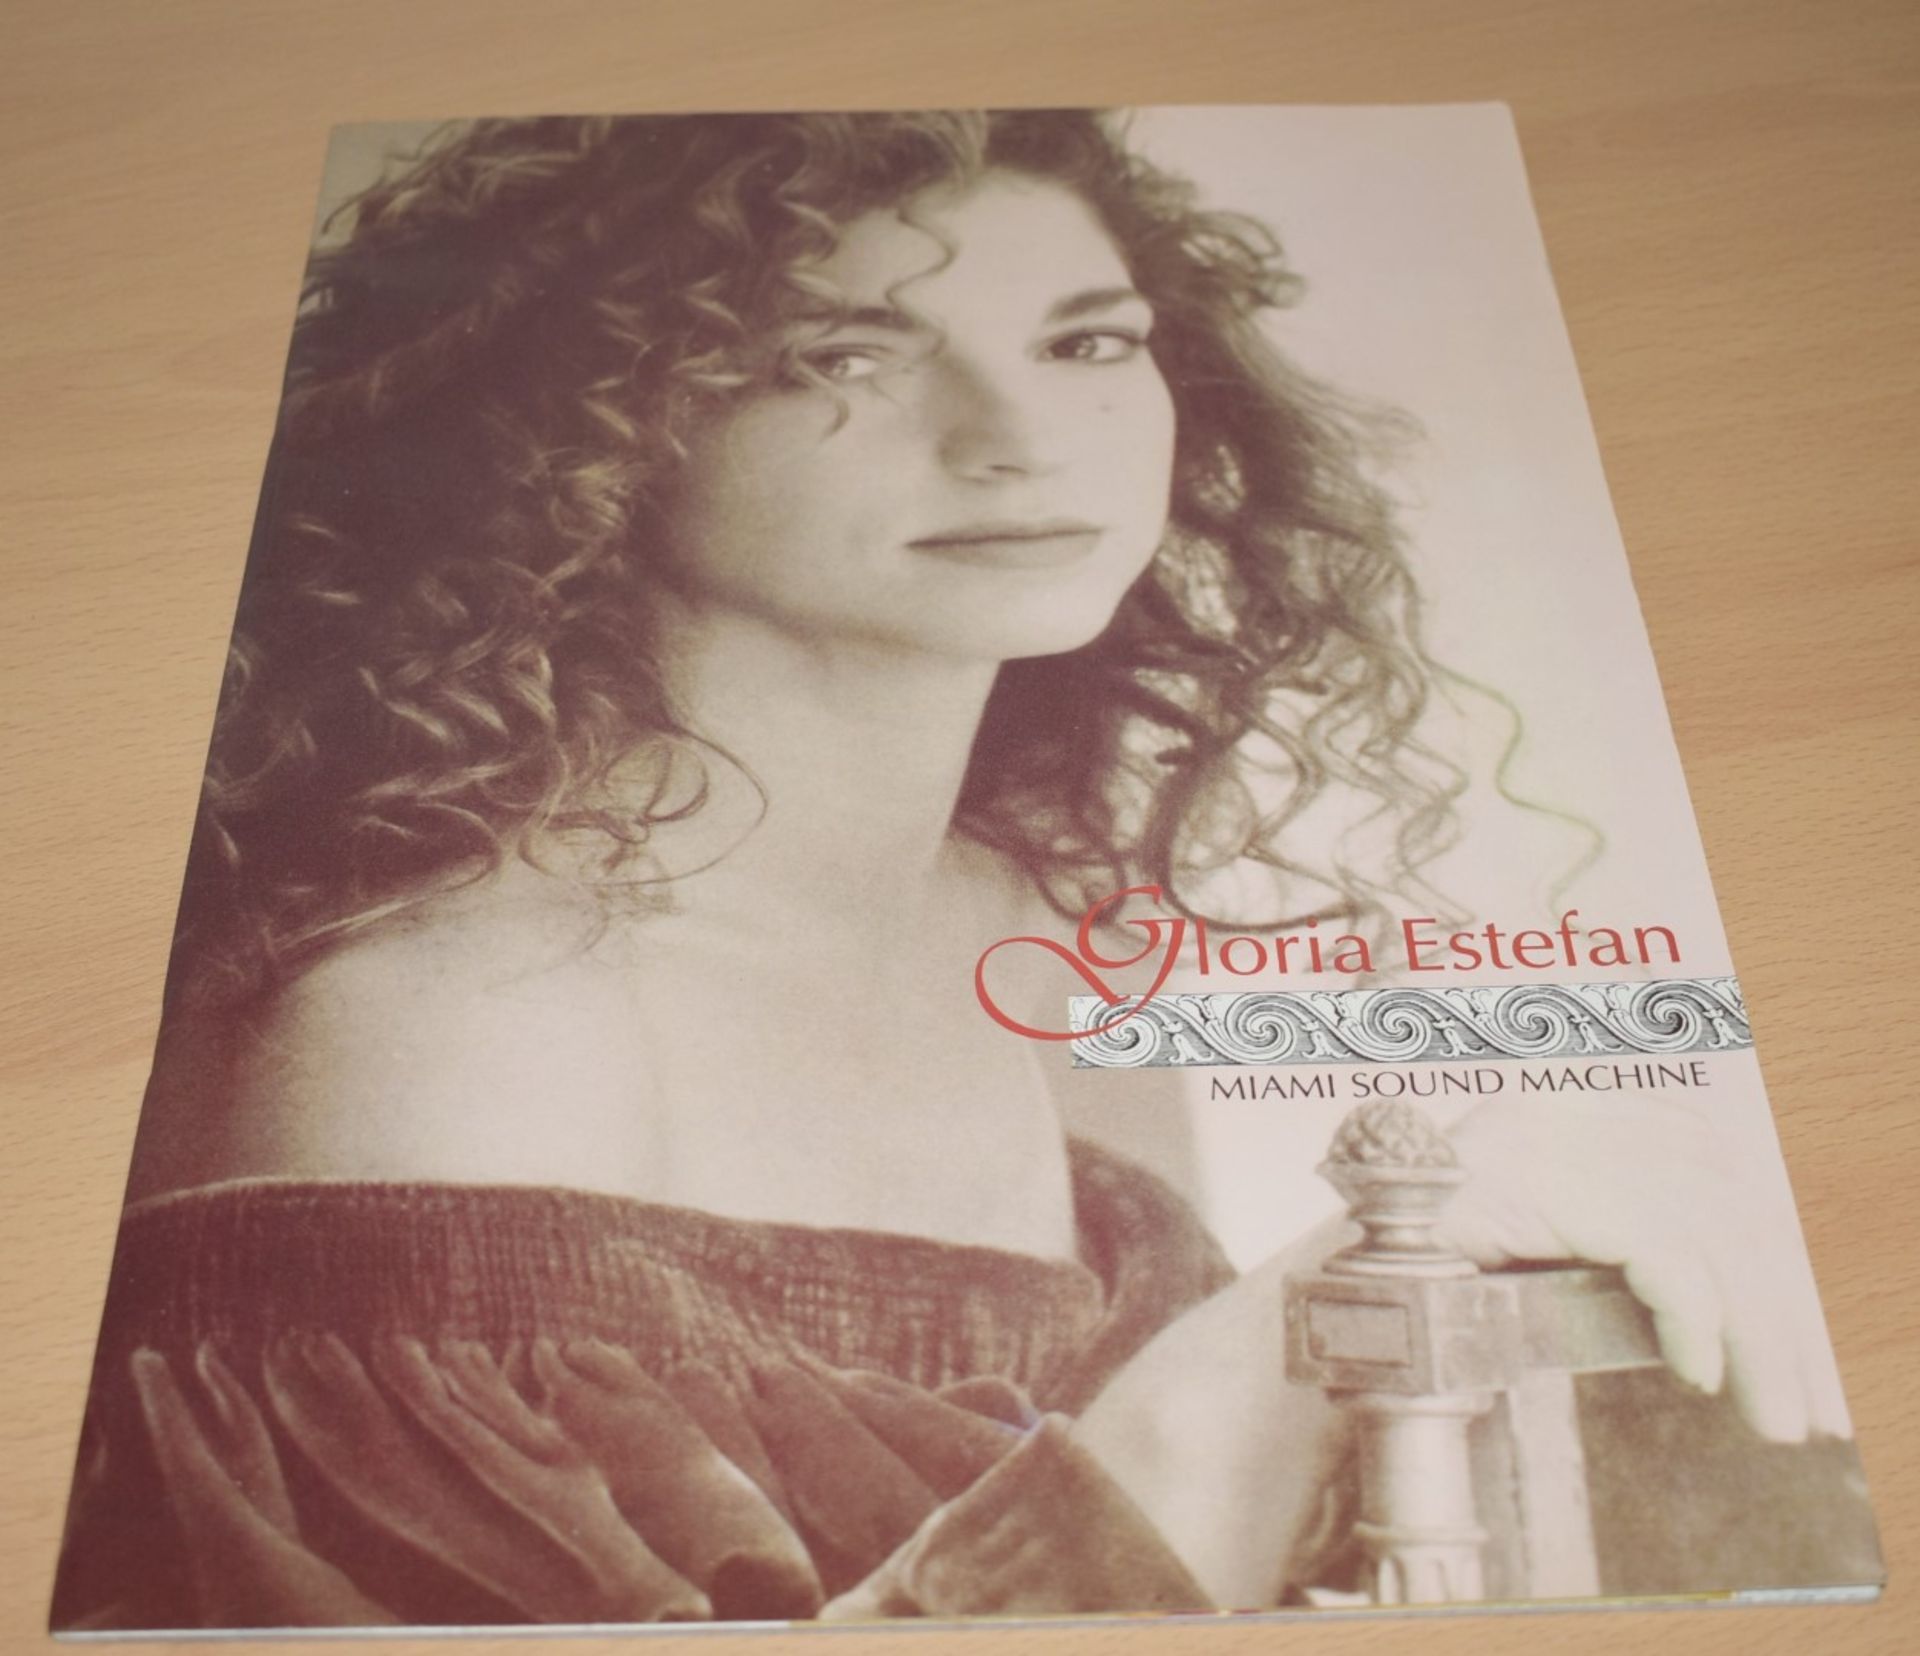 1 x Gloria Estefan Miami Sound Machine Get On Your Feet 1989-90 Tour Programme Book - Ref MB136 -